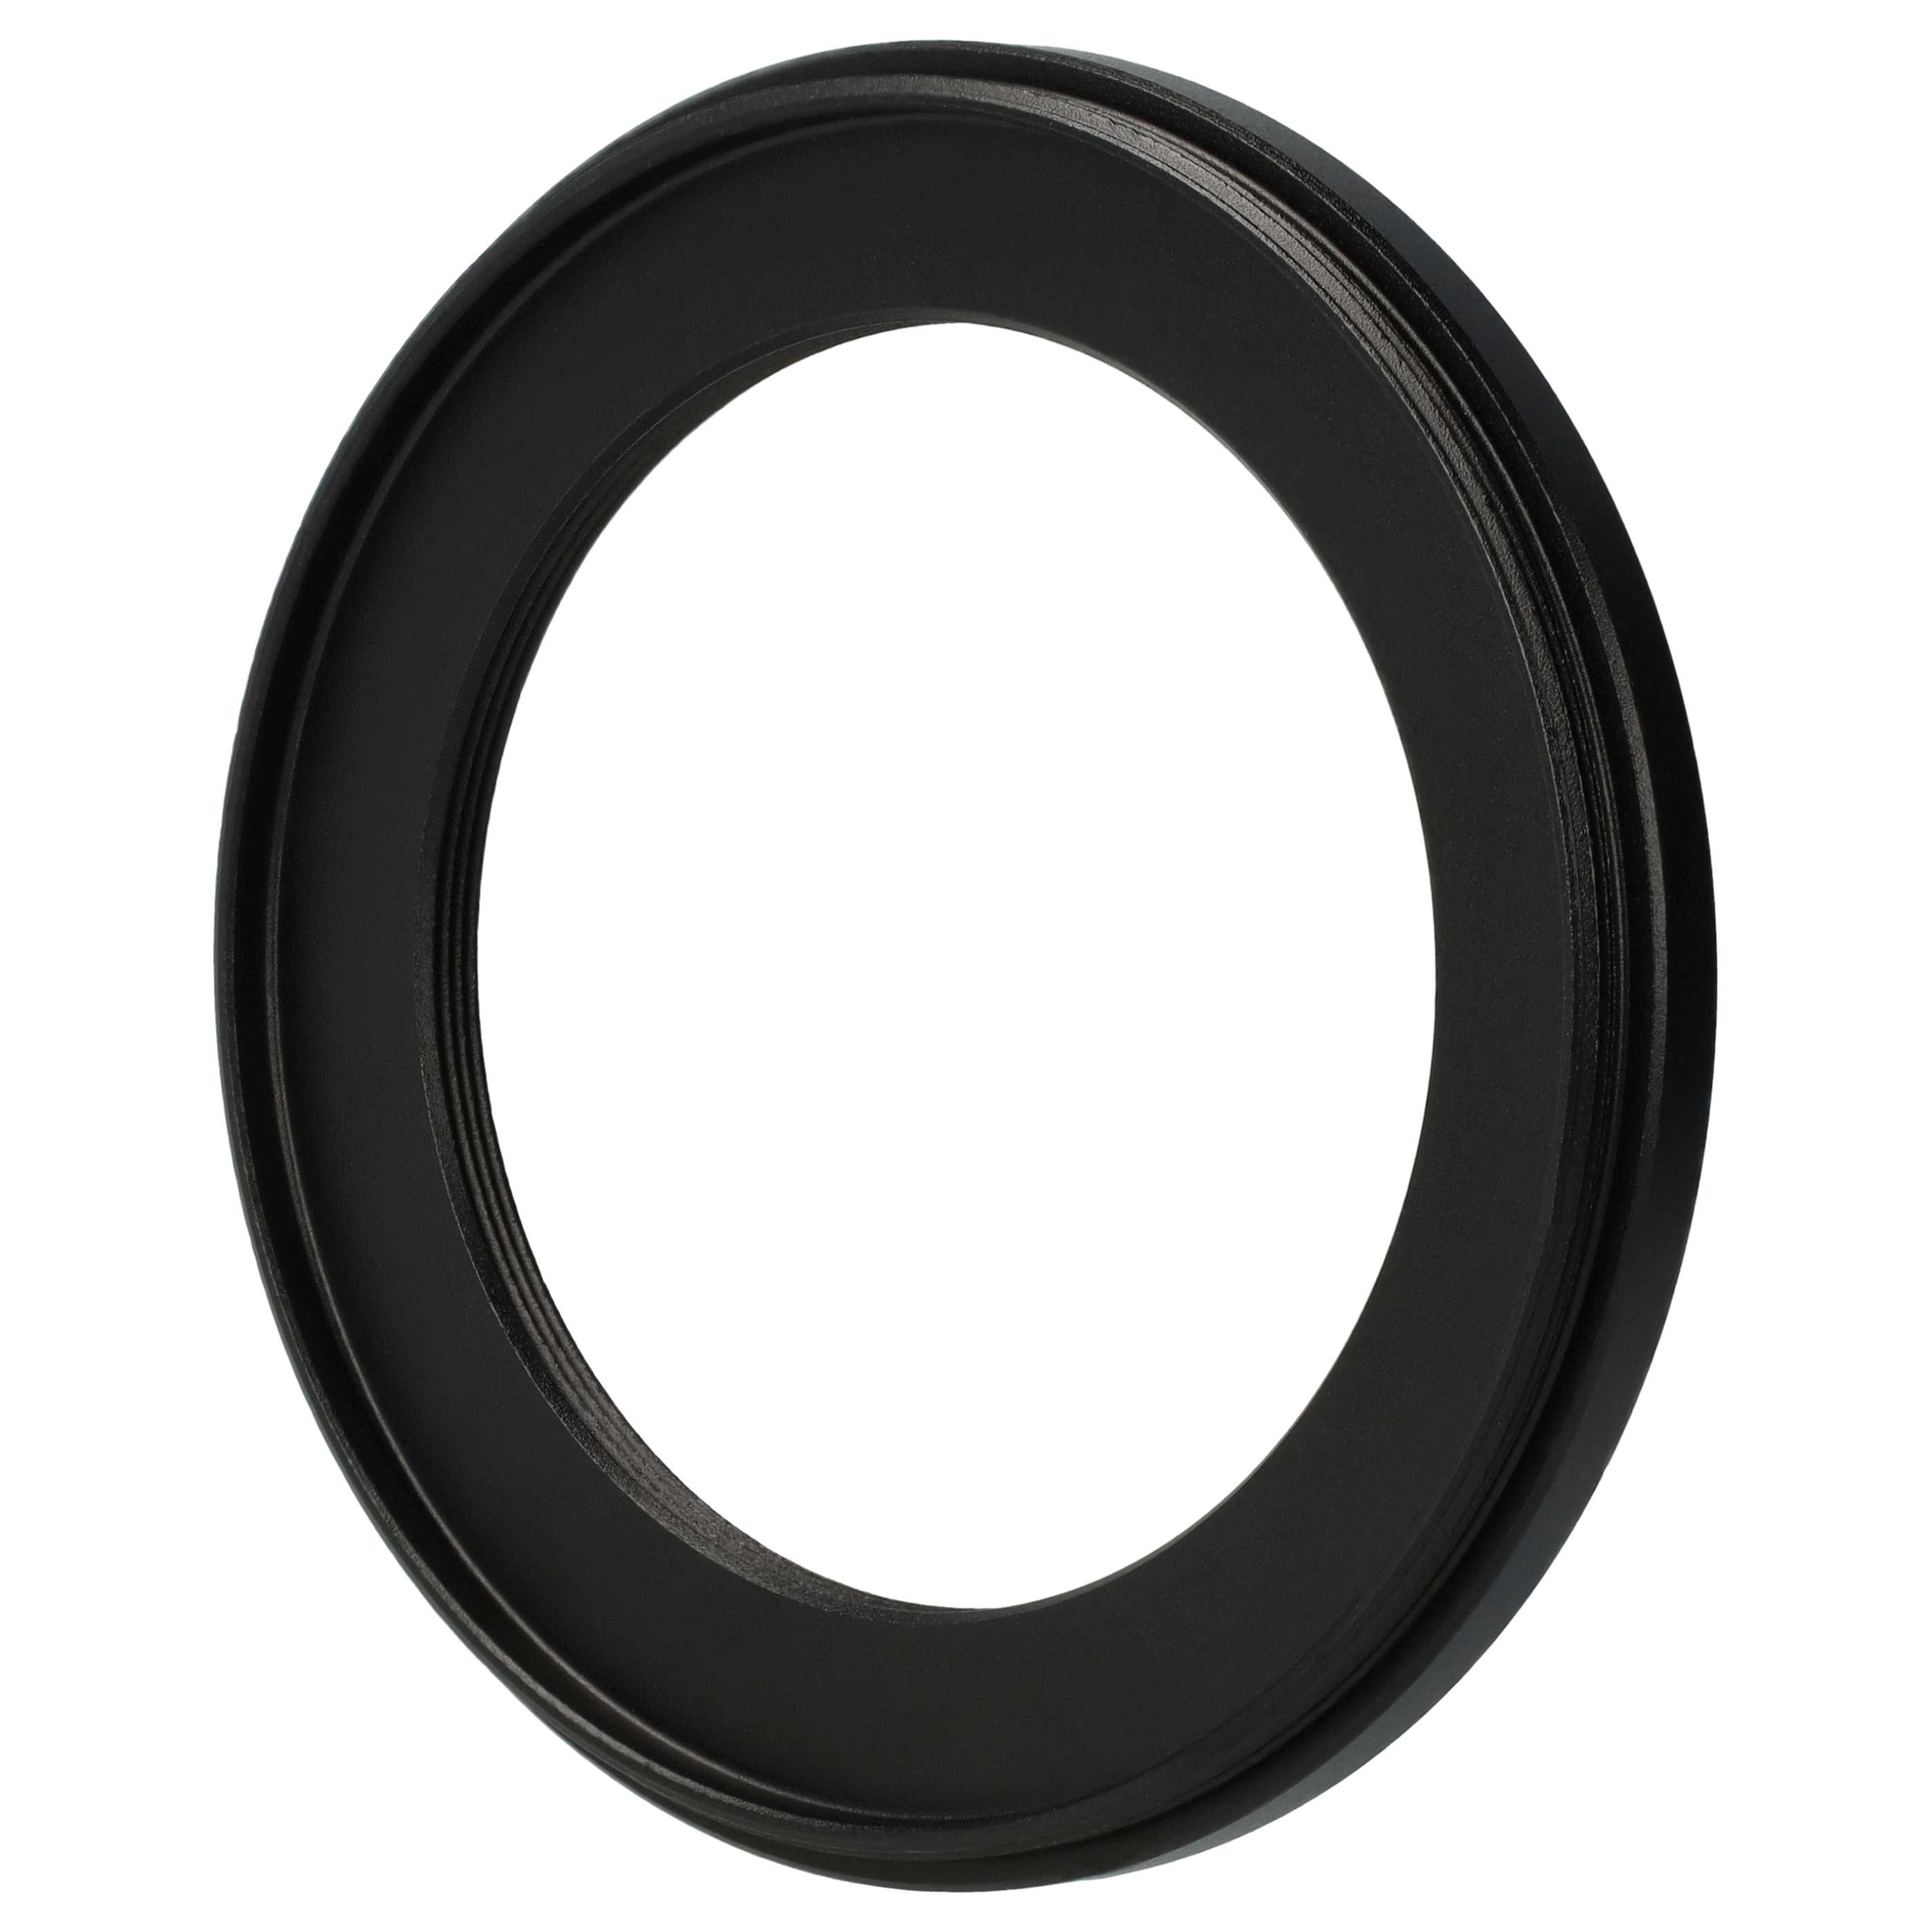 Anello adattatore step-down da 67 mm a 49 mm per obiettivo fotocamera - Adattatore filtro, metallo, nero